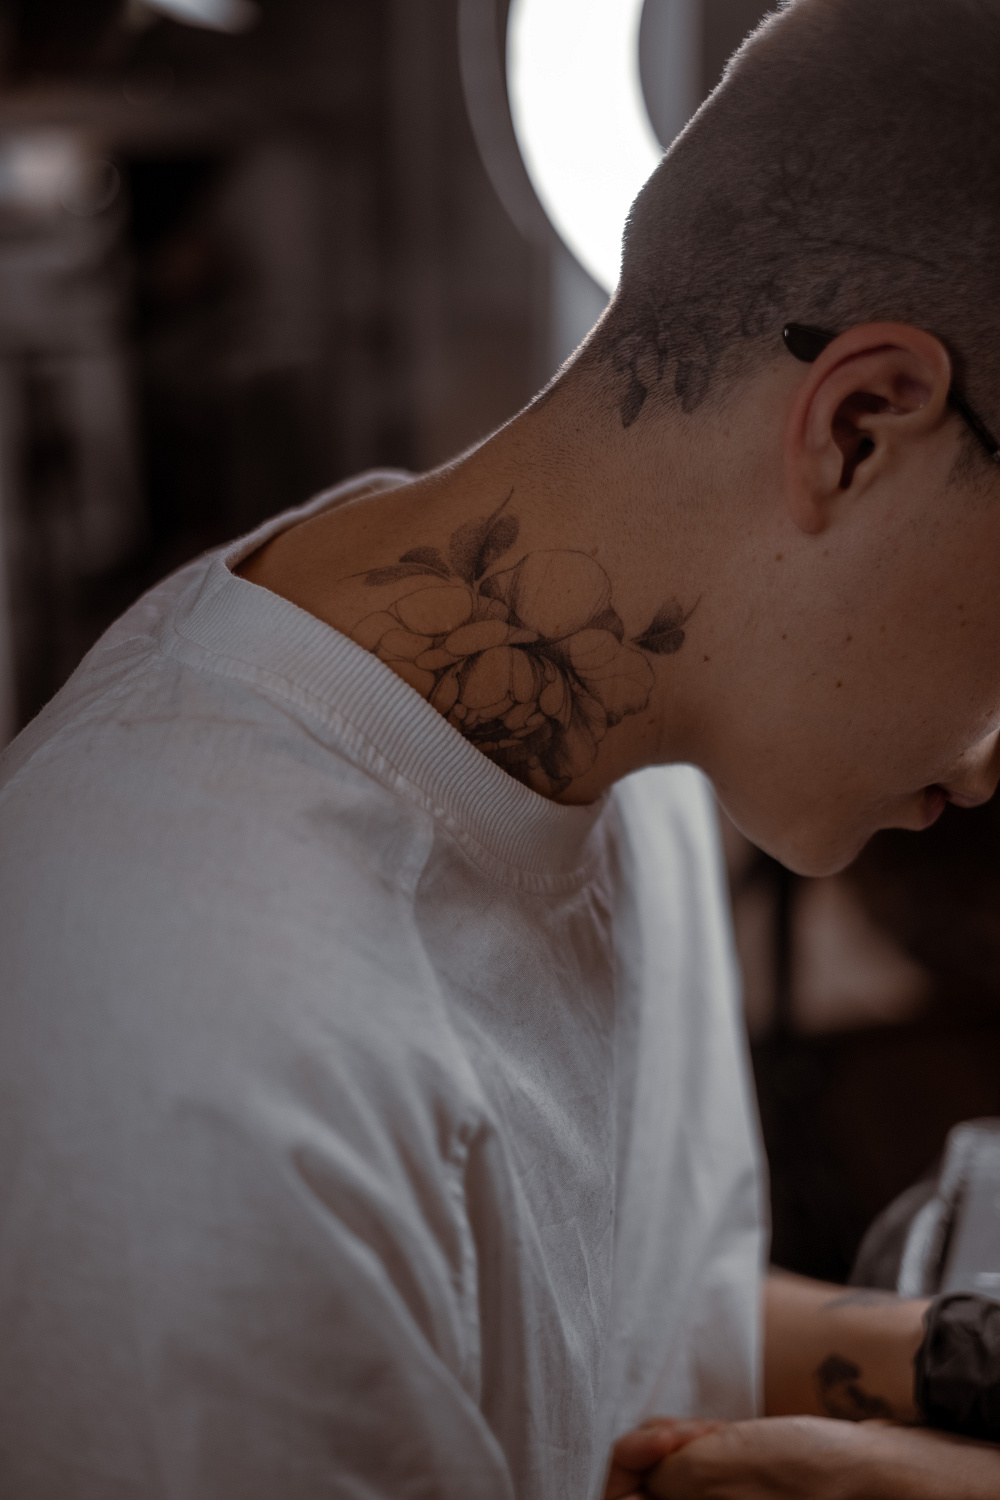 Татуировки и сауна – можно ли совмещать?